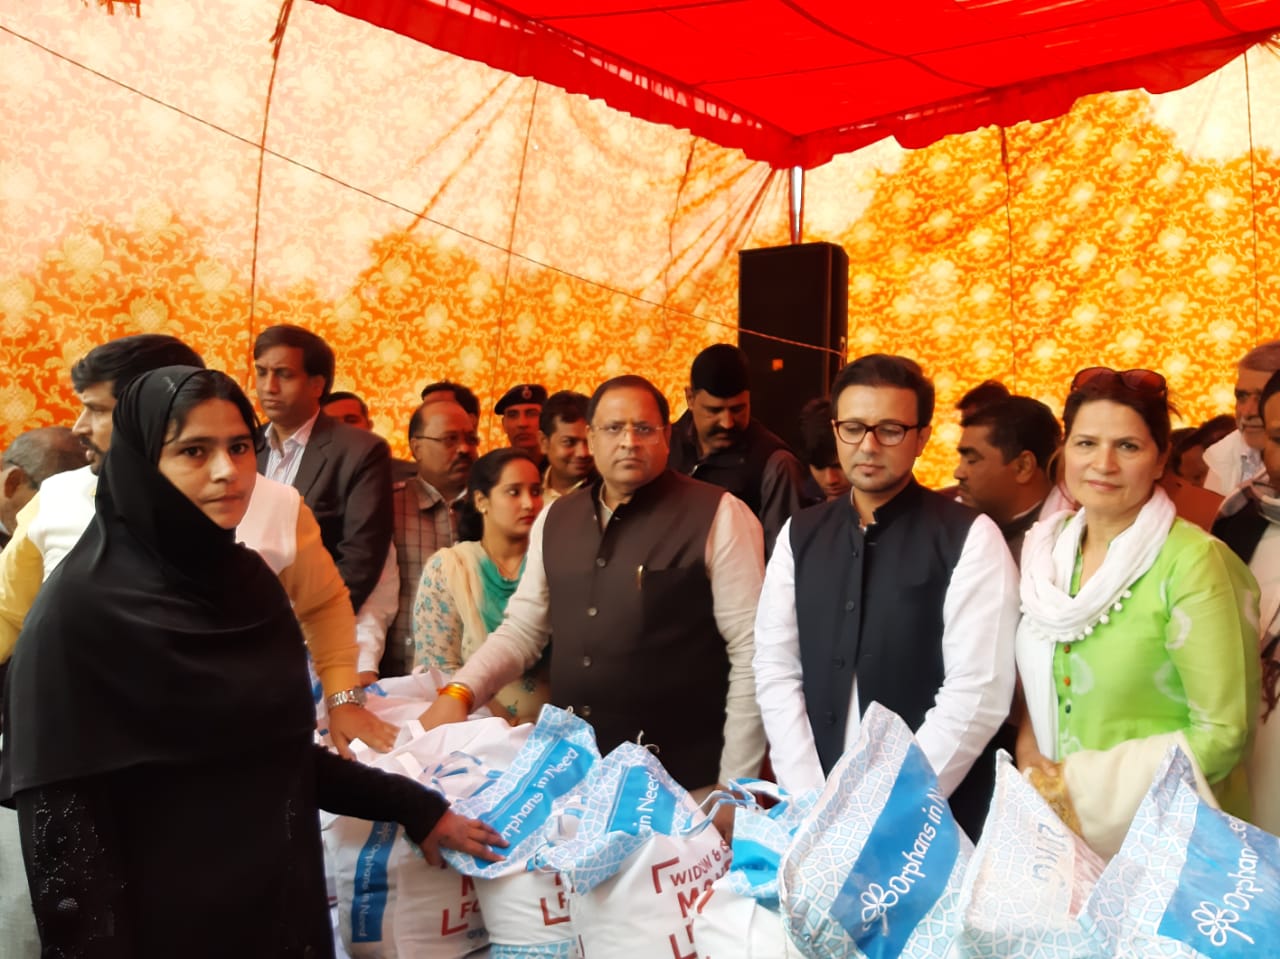 उद्योग मंत्री विपुल गोयल ने अपने कार्यालय पर किया 700 विधवा महिलाओं को 1 महीने का राशन वितरित